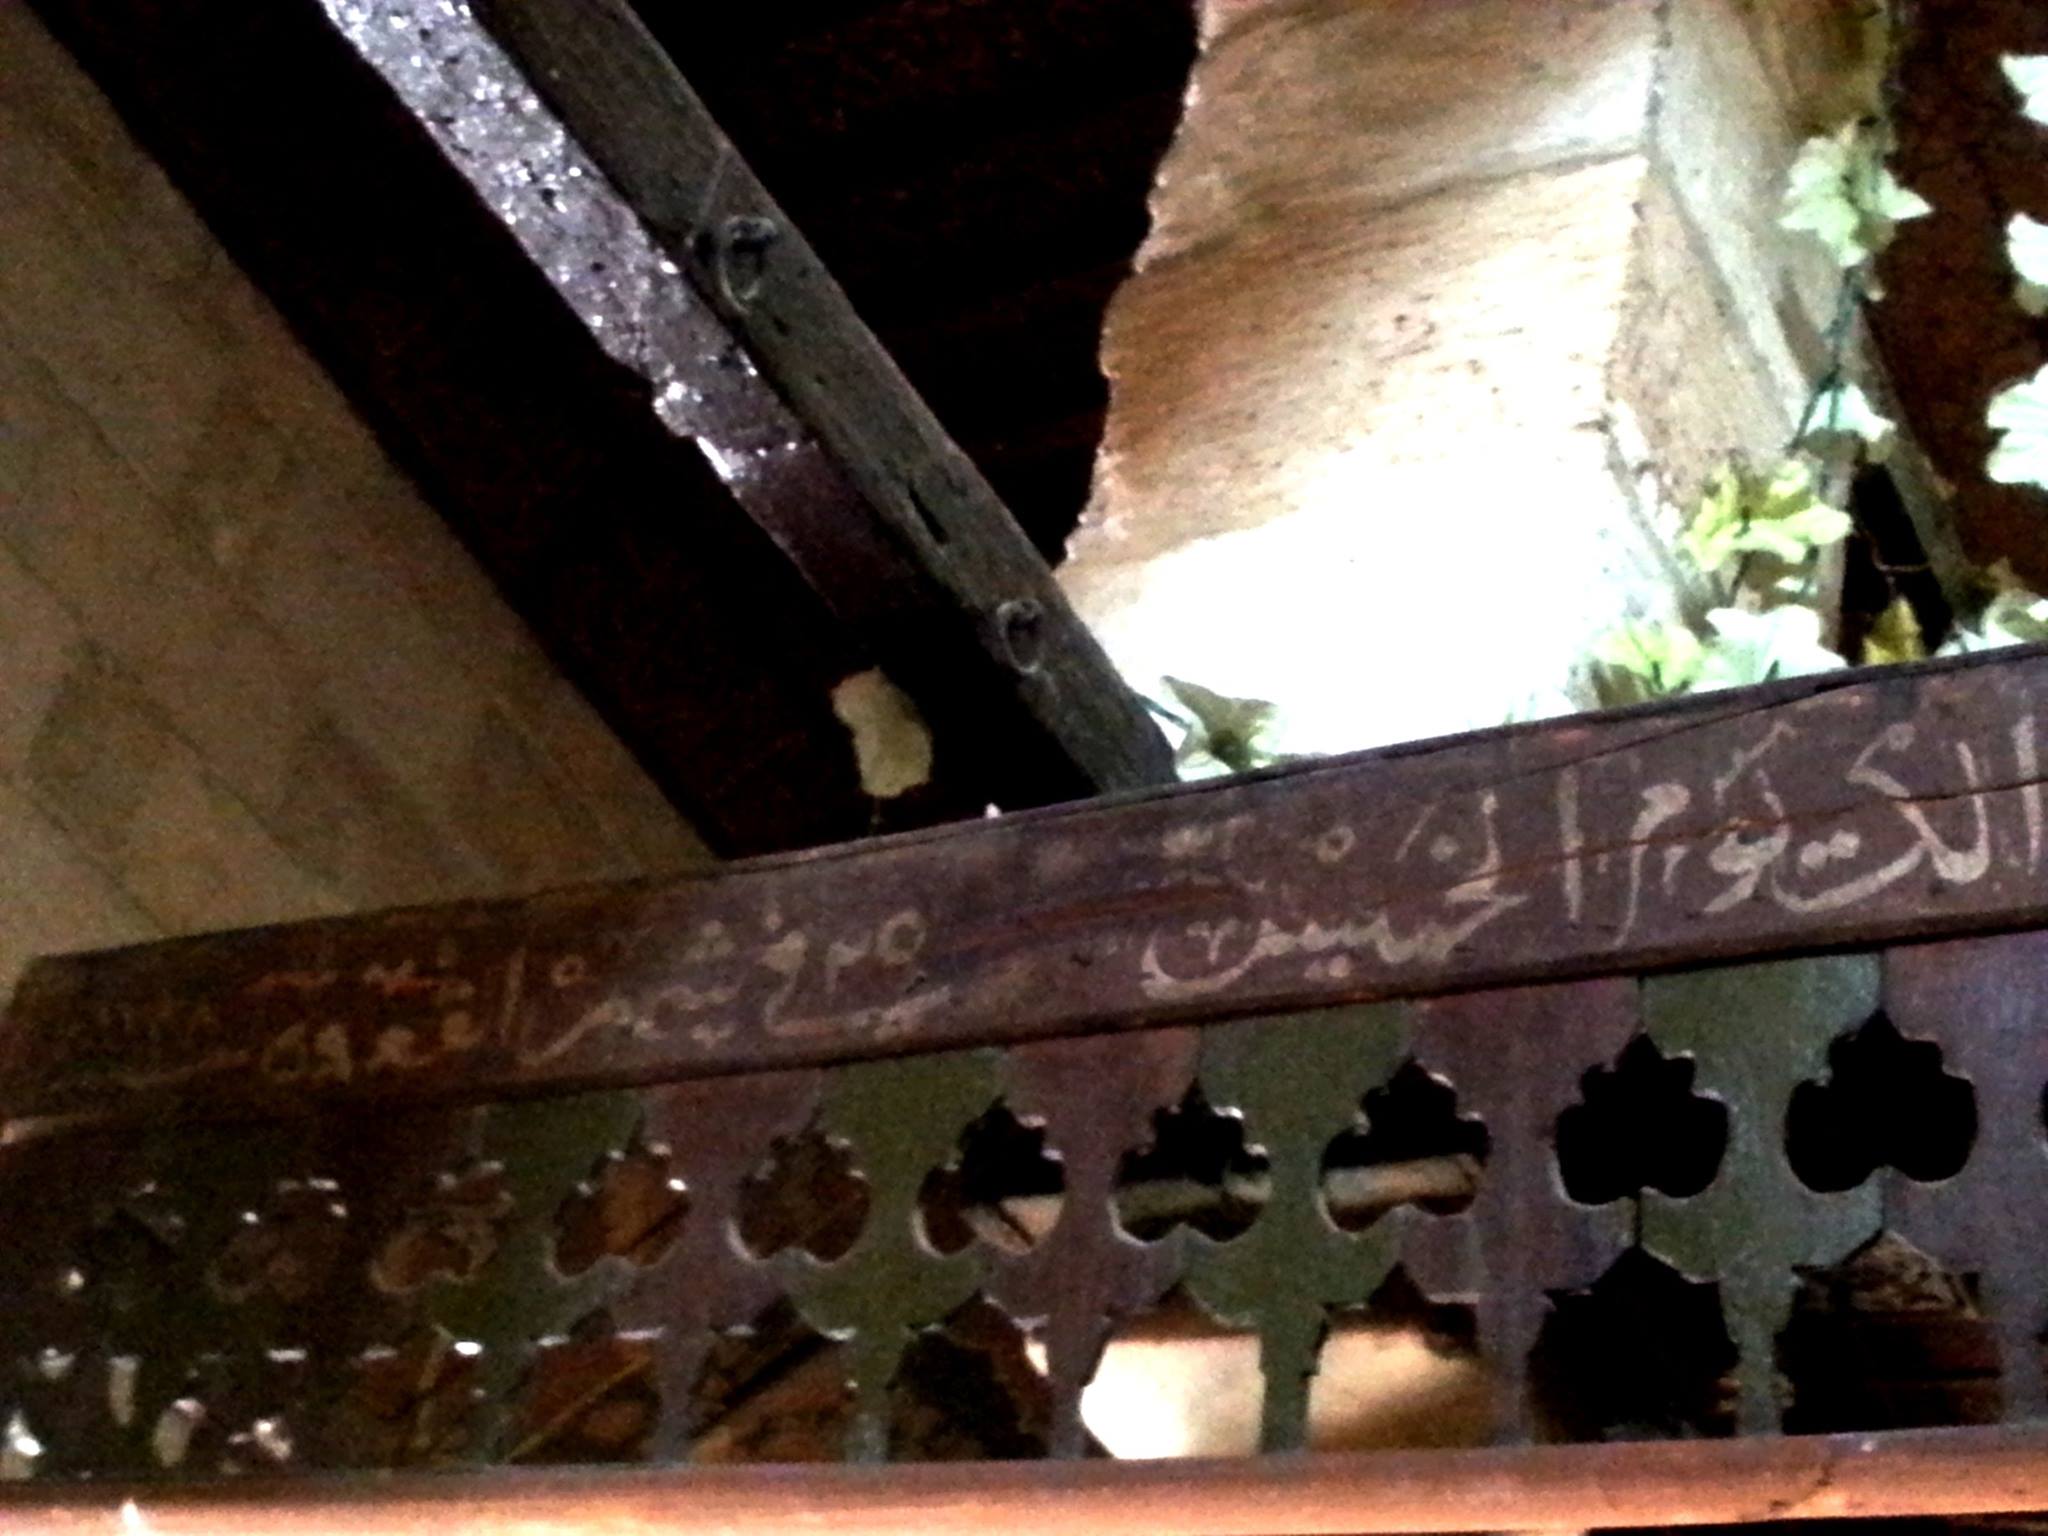 تاريخ انشاء المقصورة الخشبية شهر ذي القعدة 1138 هجرية على يد الامير موسى جورربجي مرزا مستحفظان